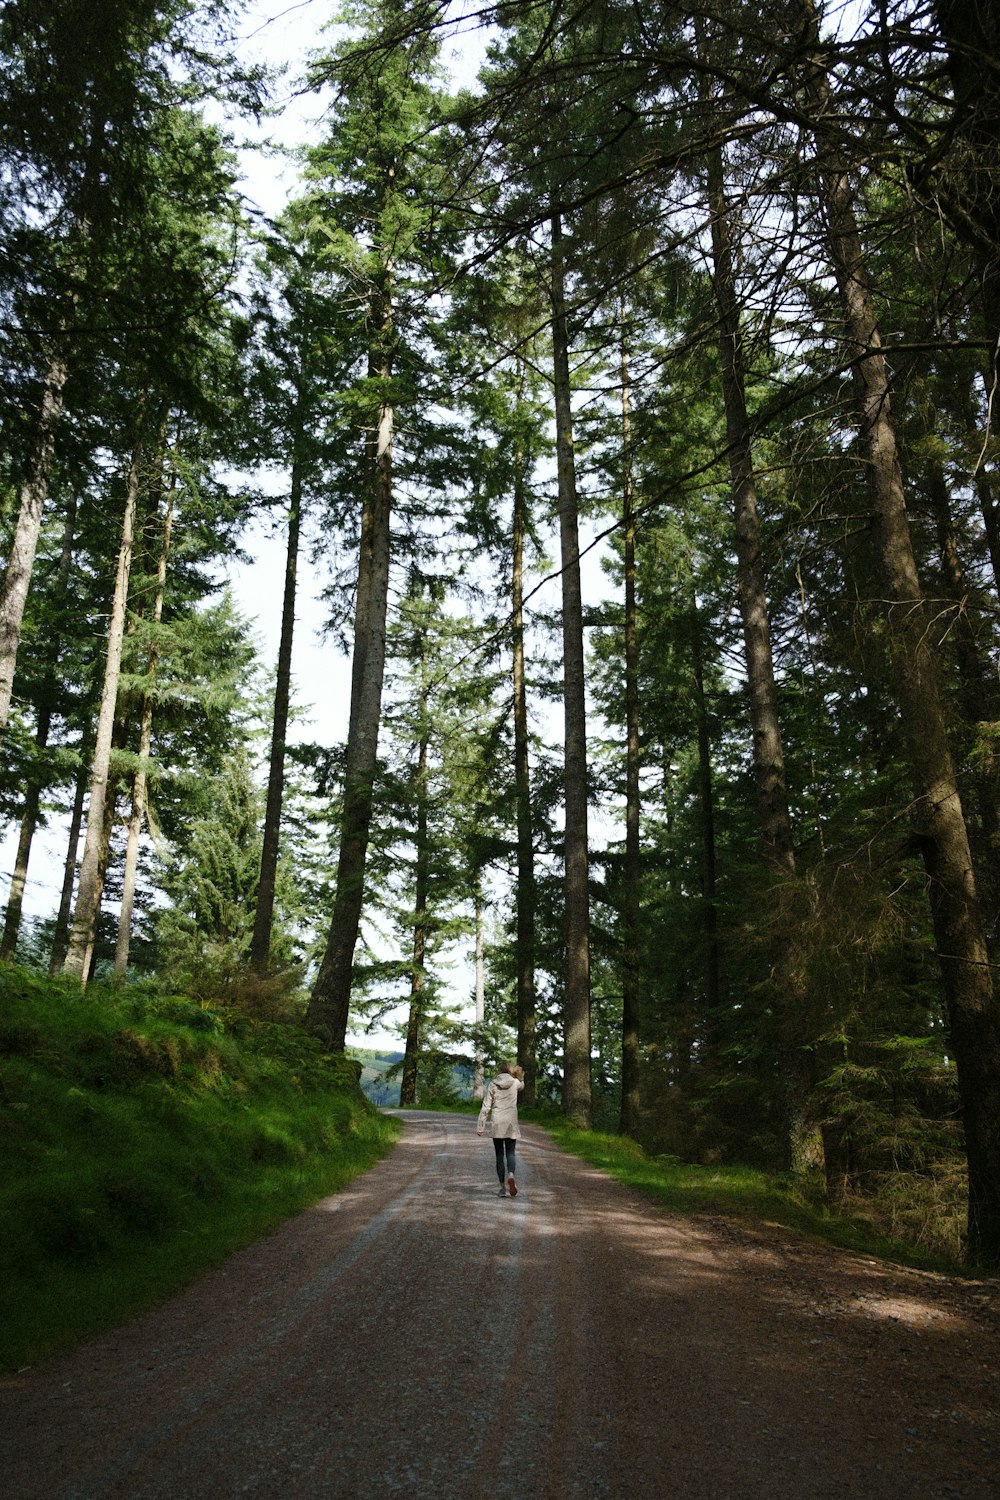 Persona con camisa blanca caminando por el sendero entre árboles verdes durante el día